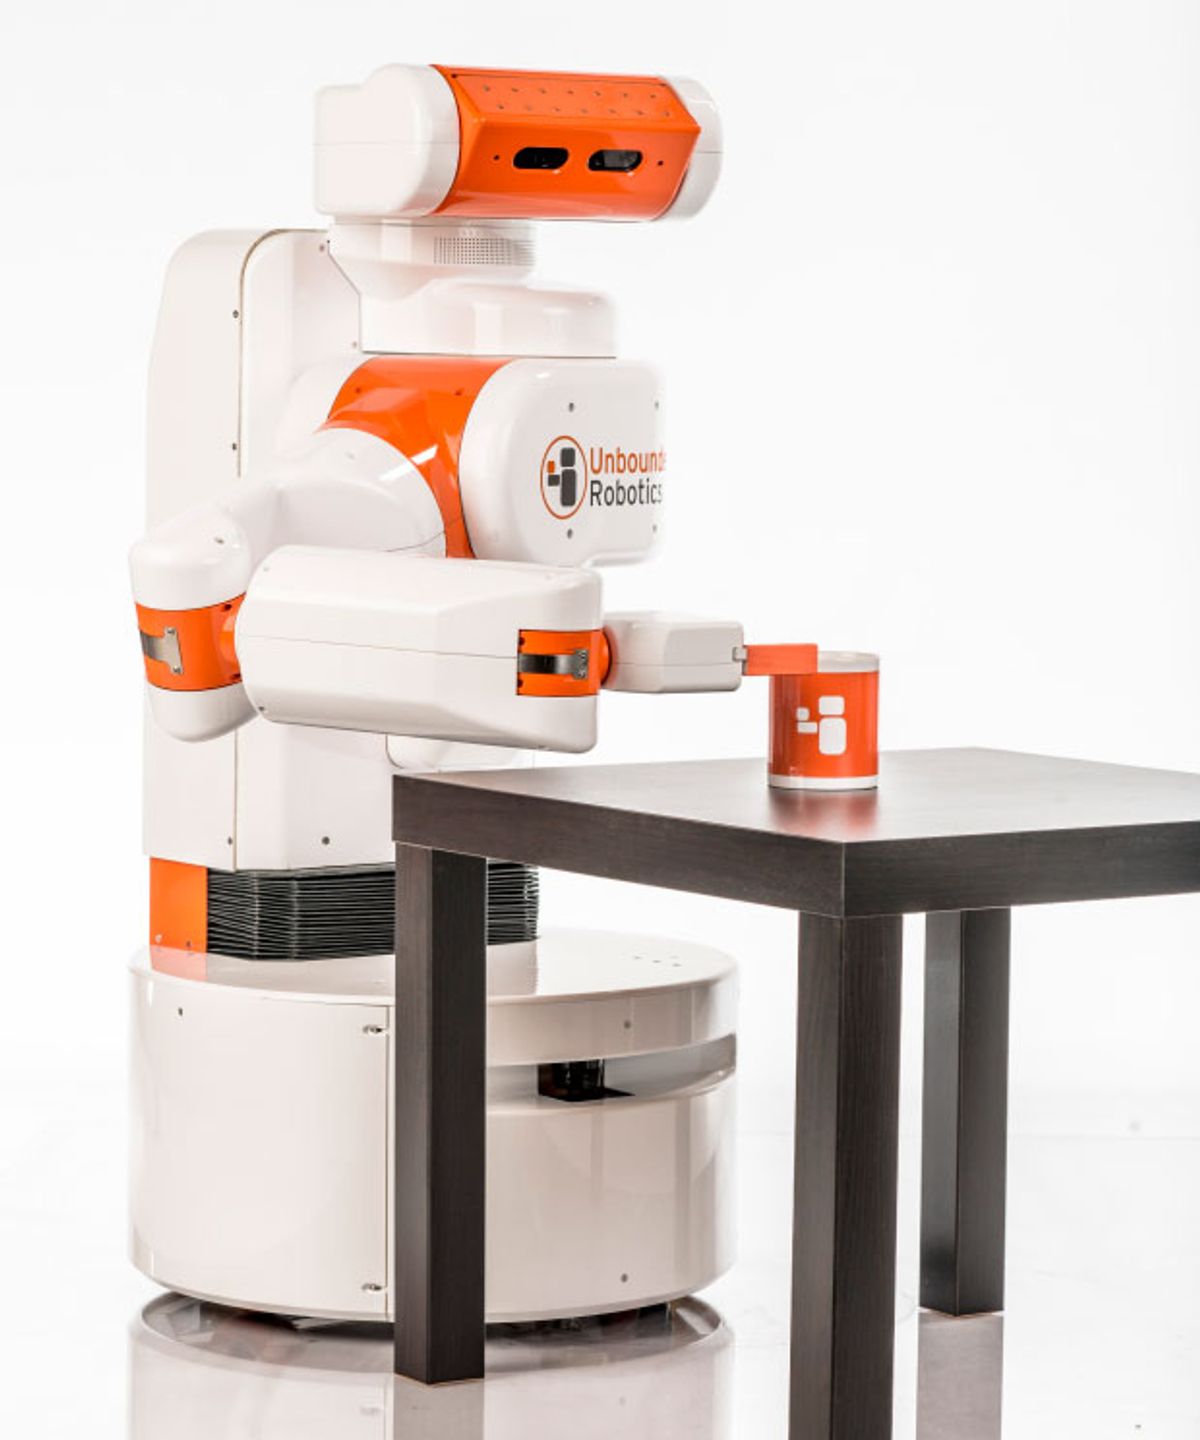 UBR-1 Robot From Unbounded Robotics Revolutionizes Affordable Mobile Manipulation